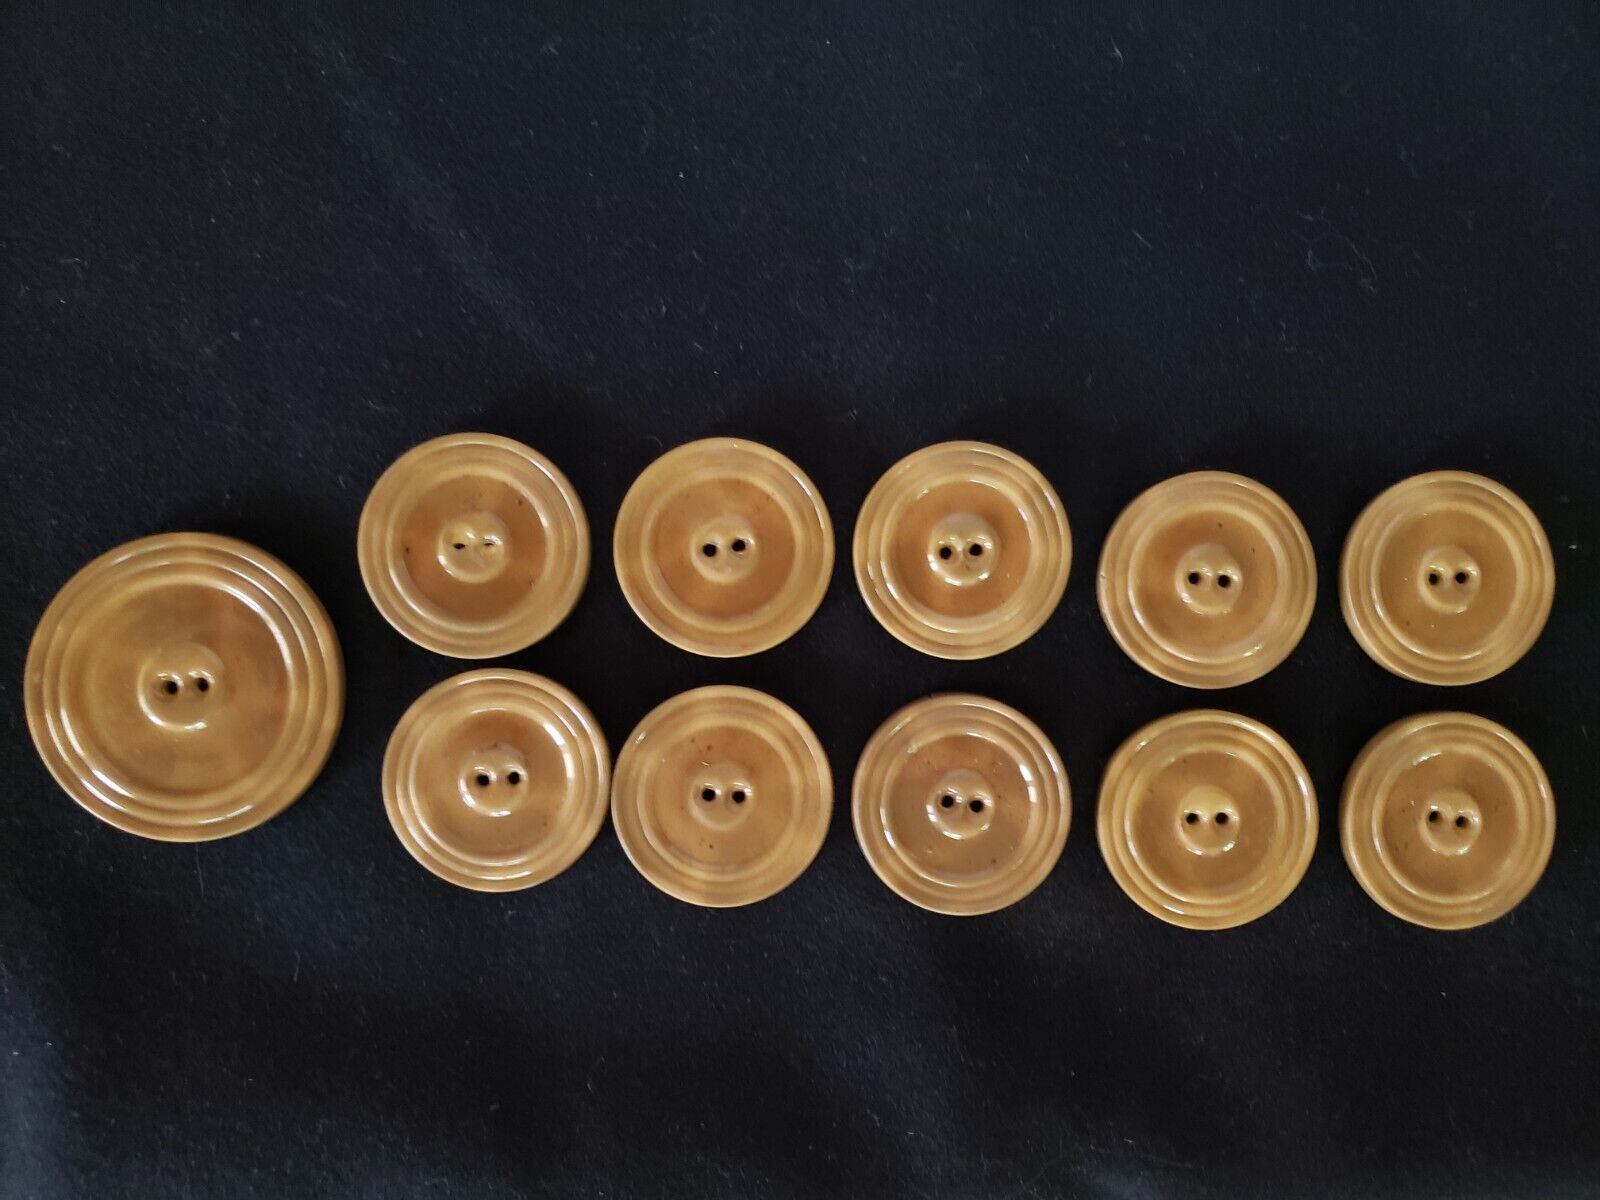 Antique Valuations: Antique Tan/Carmel colored Bakelite Plastic Buttons (Set of 11)